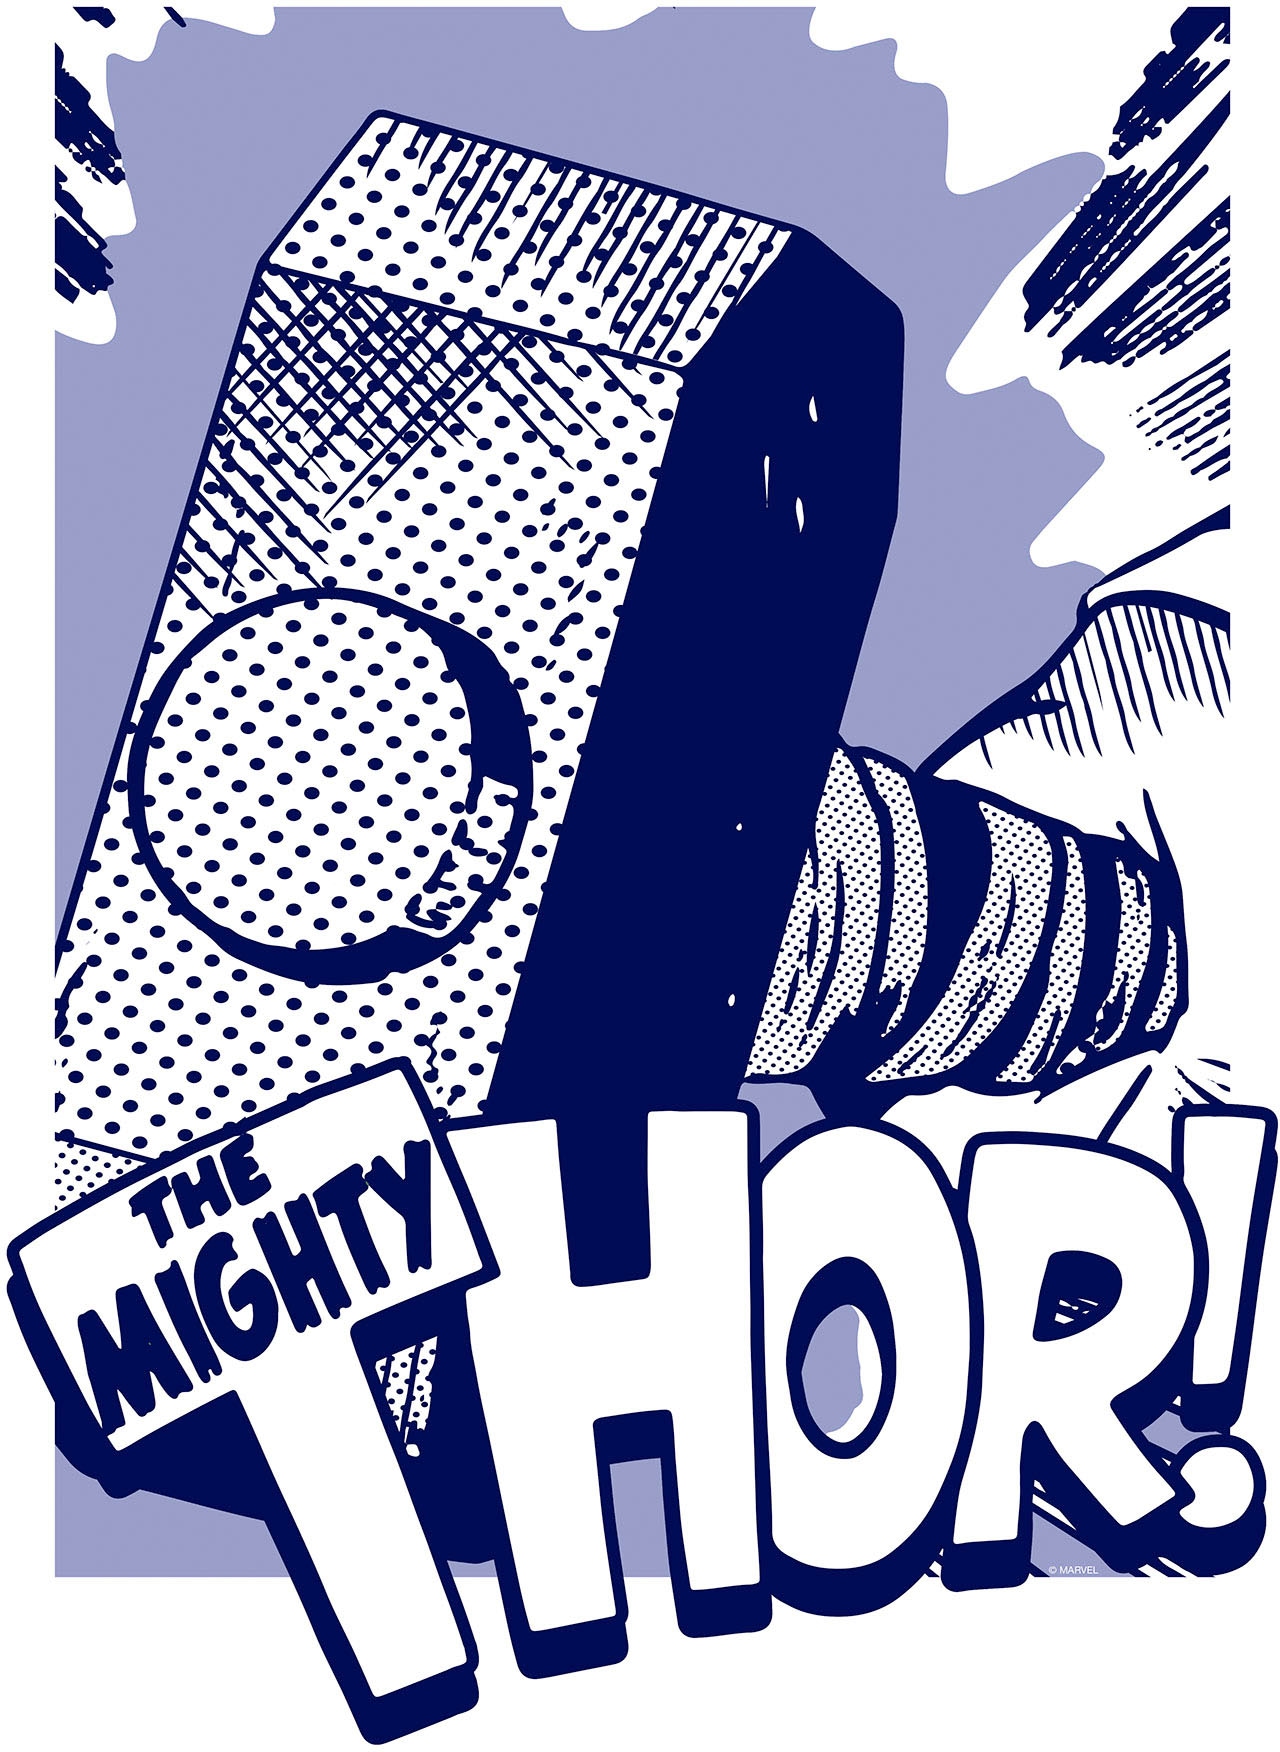 Komar Wandbild »Thor Mjölnir«, (1 St.), Deutsches Premium-Poster Fotopapier mit seidenmatter Oberfläche und hoher Lichtbeständigkeit. Für fotorealistische Drucke mit gestochen scharfen Details und hervorragender Farbbrillanz.